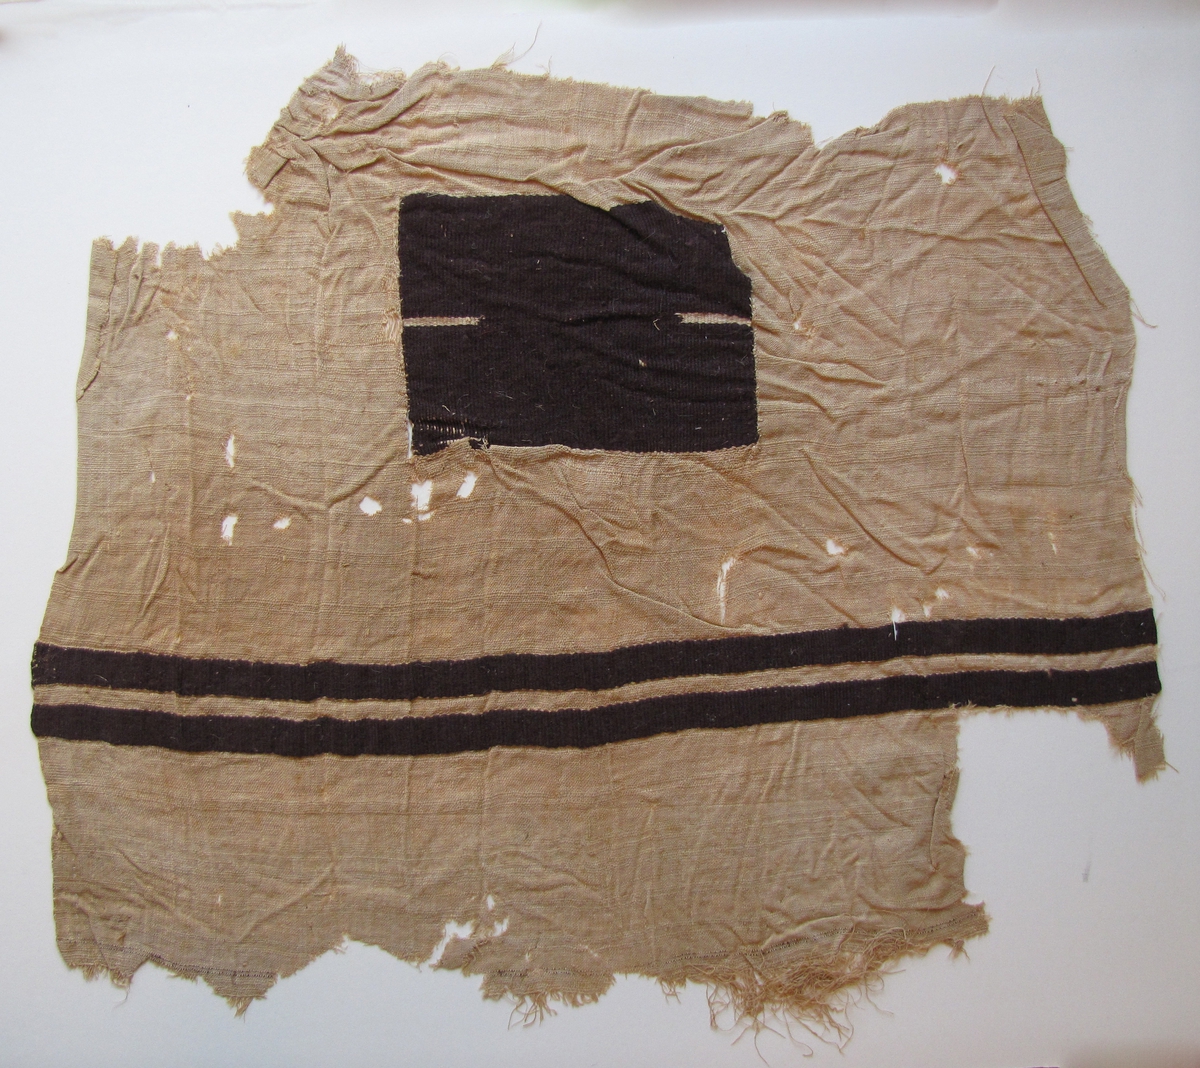 Fotkläde II
 
Nr 12 155 - 12 159 tillhör den egyptiska sarkofagern ''mumien''. 

2014-05-23 Enligt forskare Maciej Szymaszek är detta troligen ett fragment av en mantel från södra Egypten. Troligen tillhör detta fragment tillsammans med VM 1392, VM 1 393 och VM 12 159 samma mantel.

Ej tidigare inmärkta.